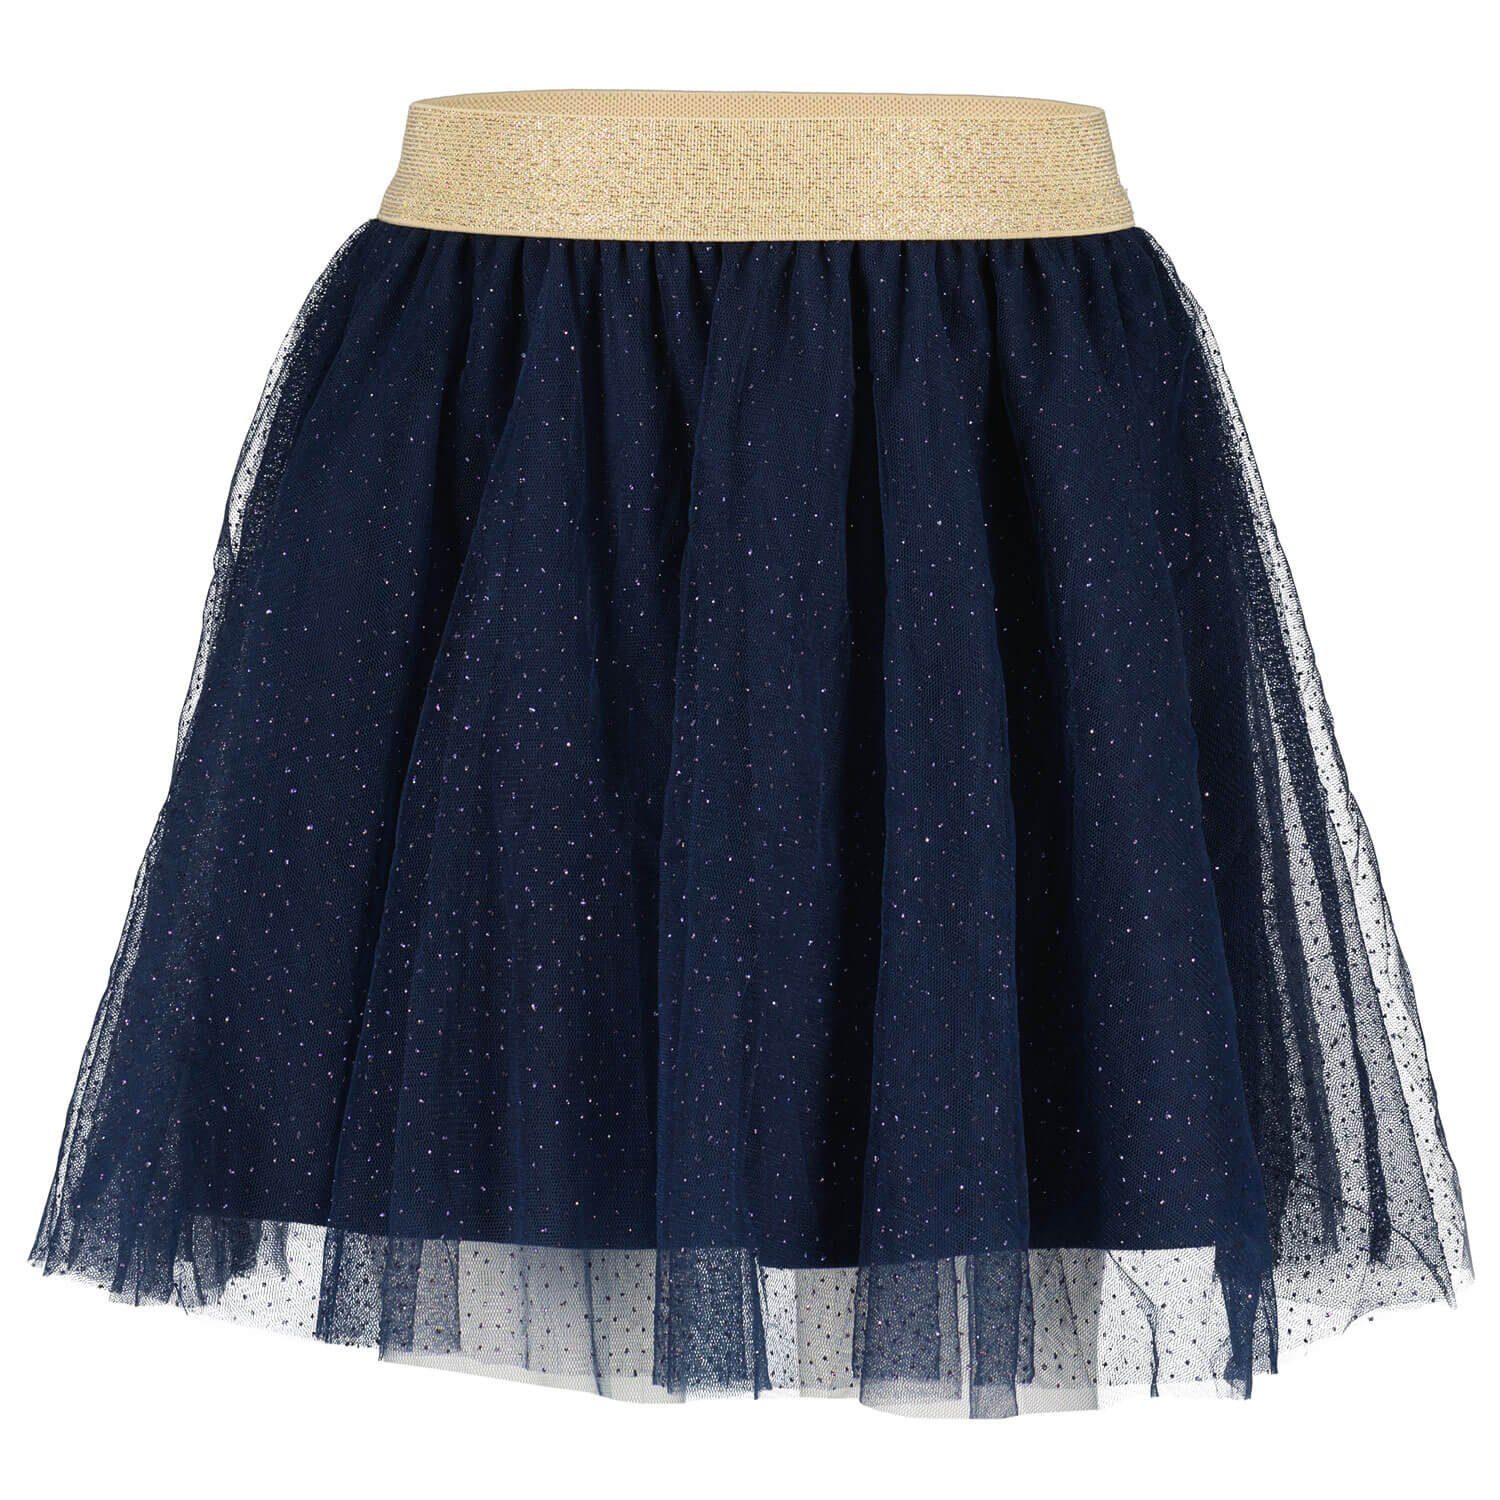 Blue Seven Sommerkleid Kinder Mädchen Tüllrock mit elastischem Bund - Rock mit Glitzerdruck